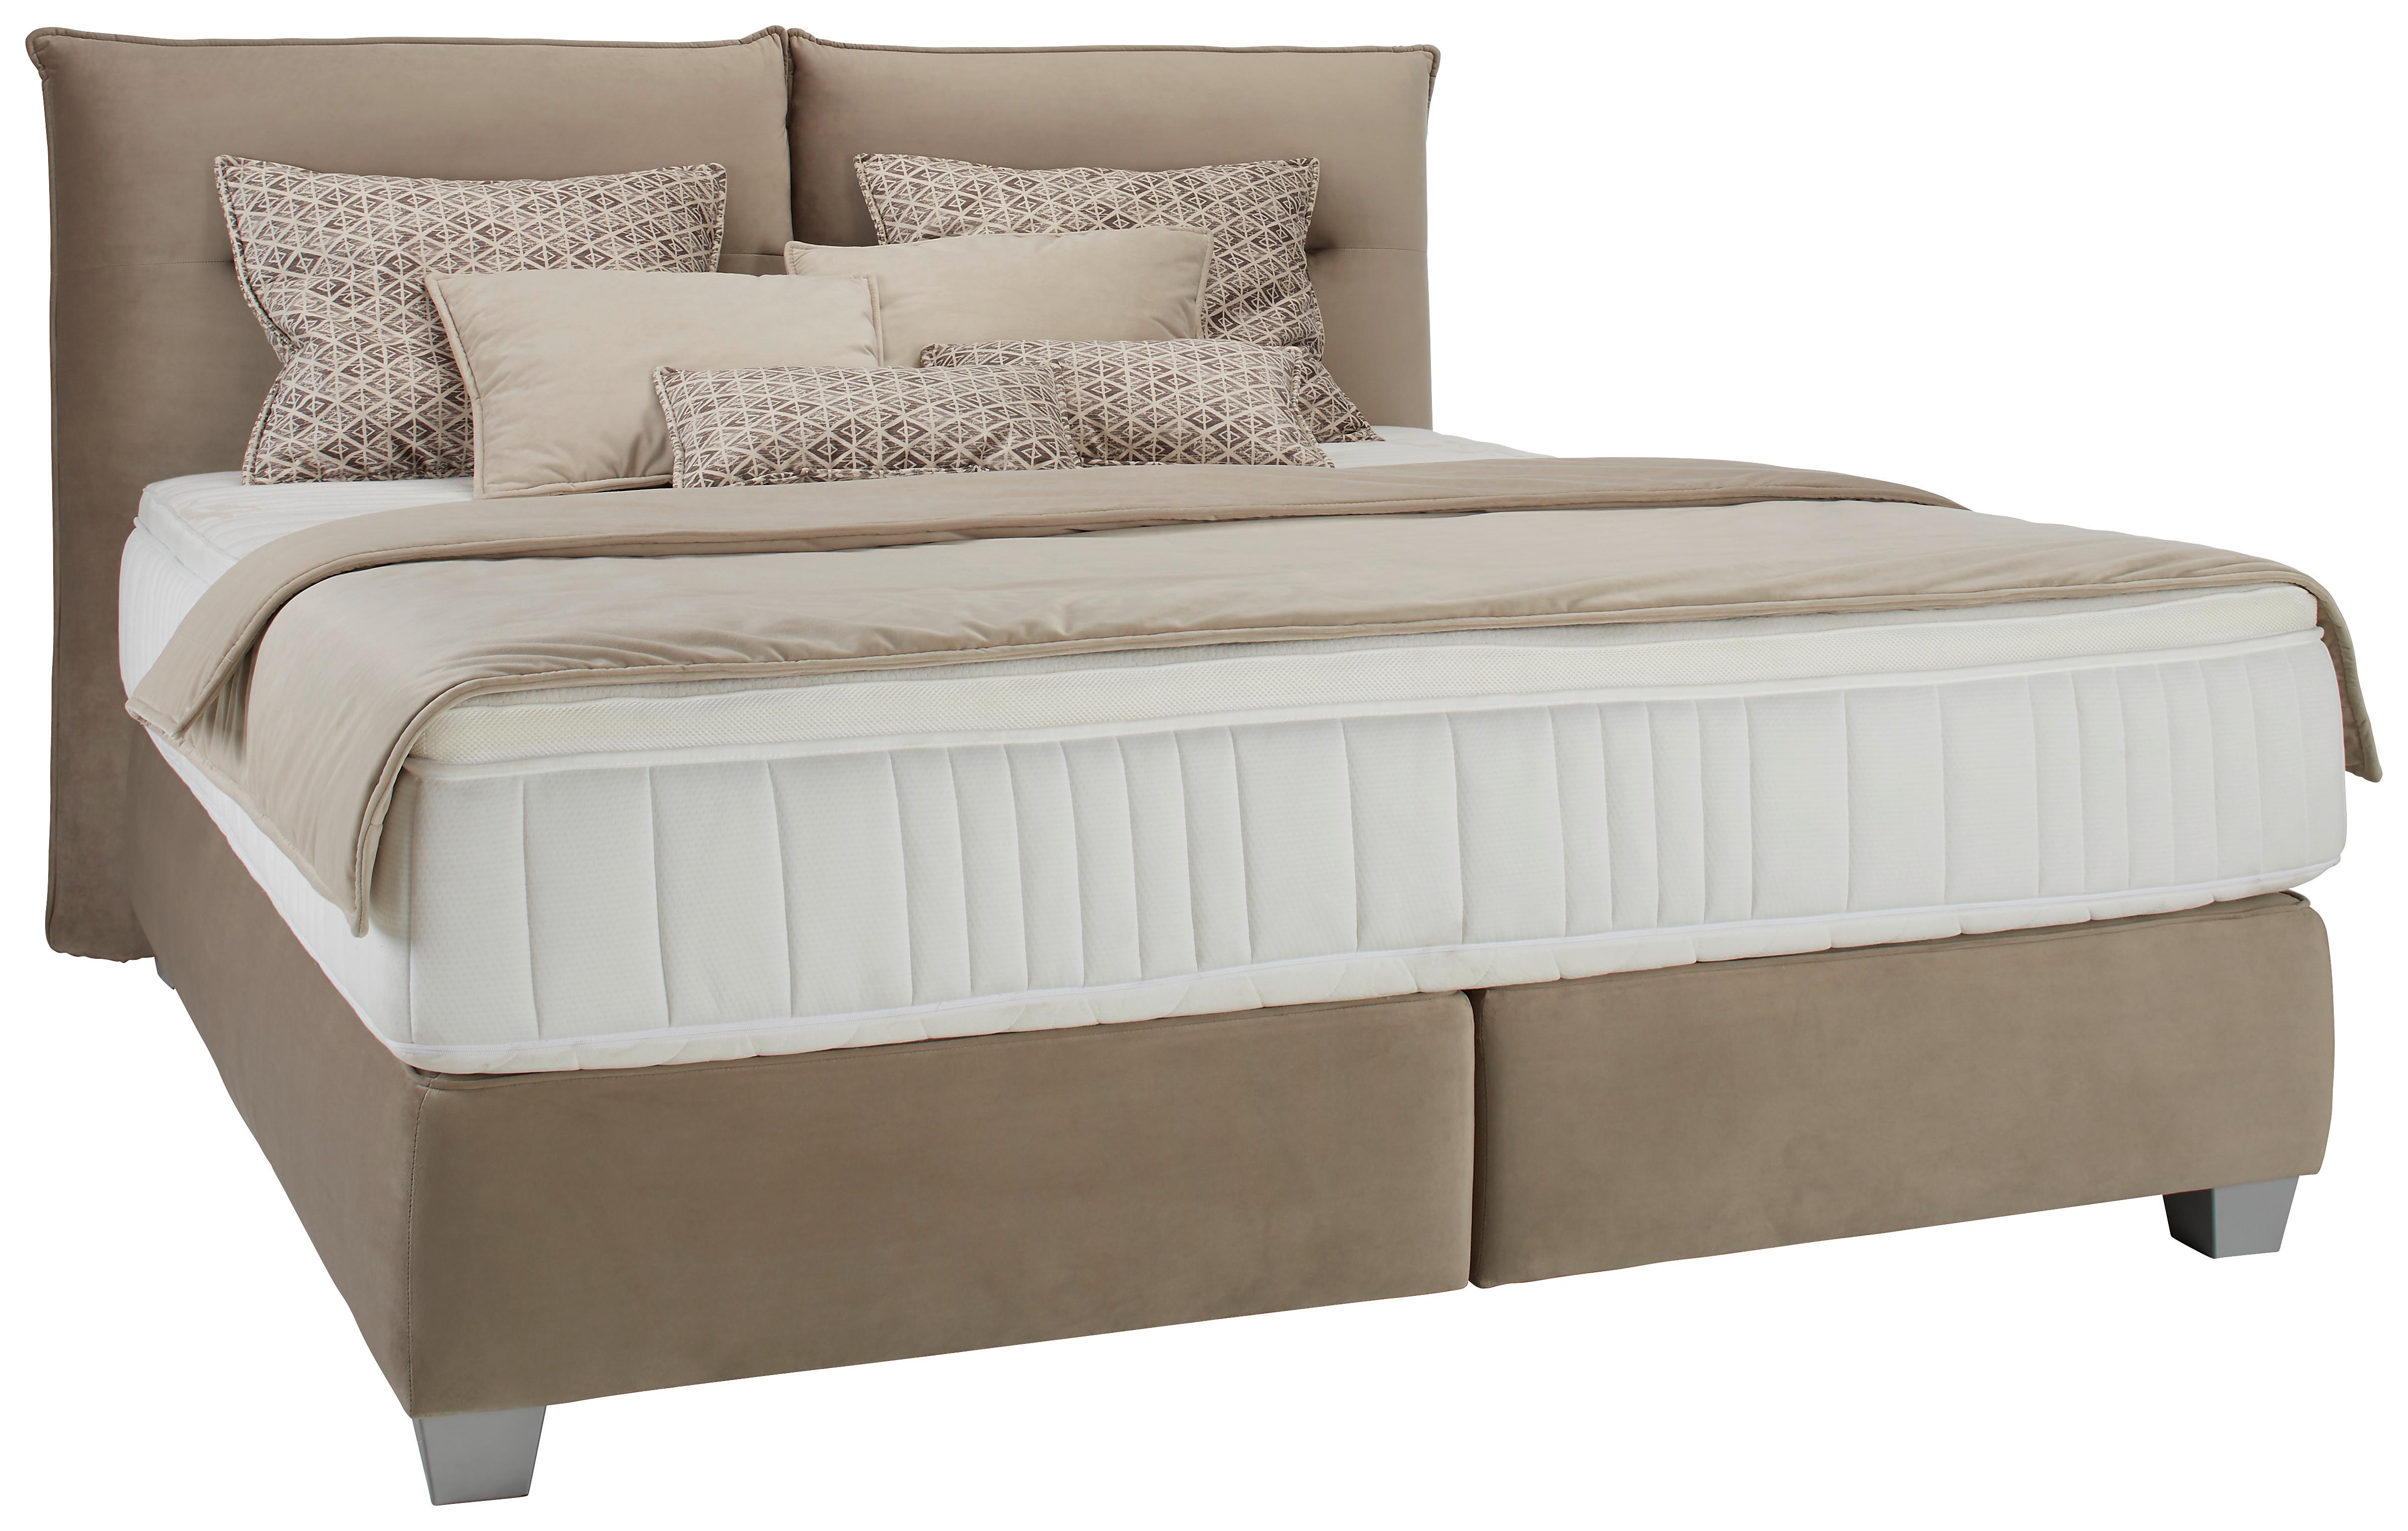 Bett in Beige ca. 160x200cm - Beige/Silberfarben, Kunststoff/Textil (160/200cm) - Premium Living